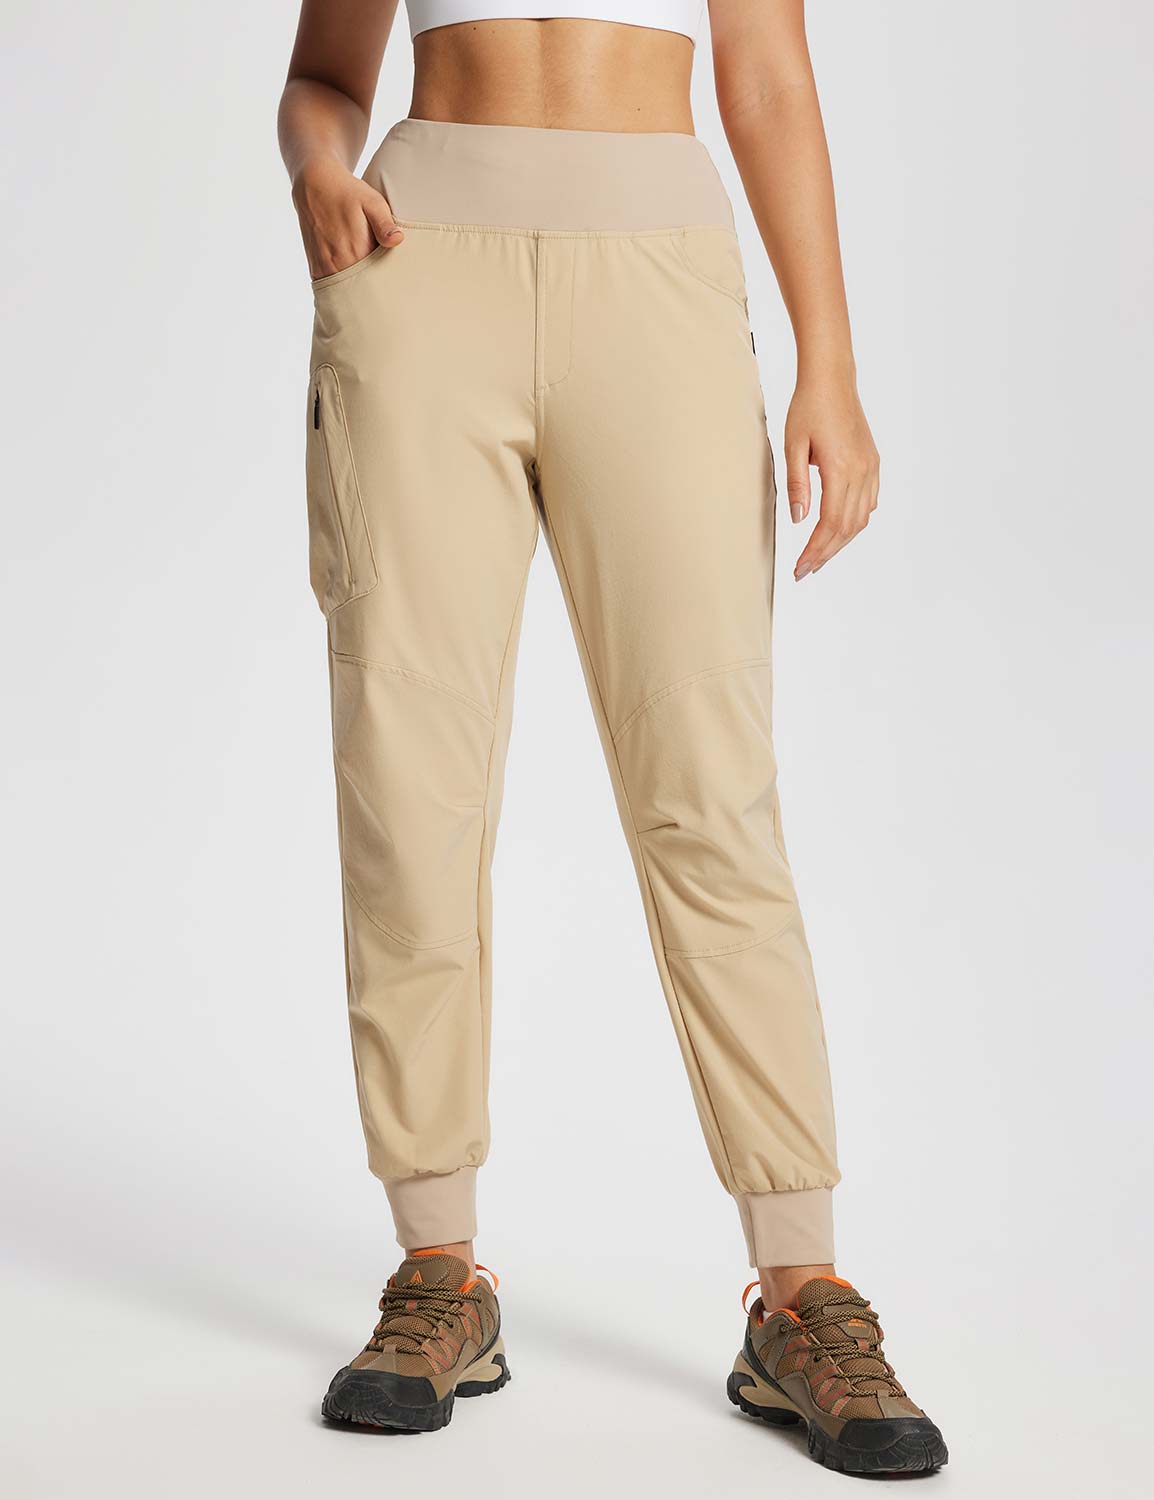 BALEAF Women's Hiking Cargo Pants Outdoor Lightweight Capris Water  Resistant UPF 50 Zipper Pockets Navy Blue Size XL - All4Hiking.com